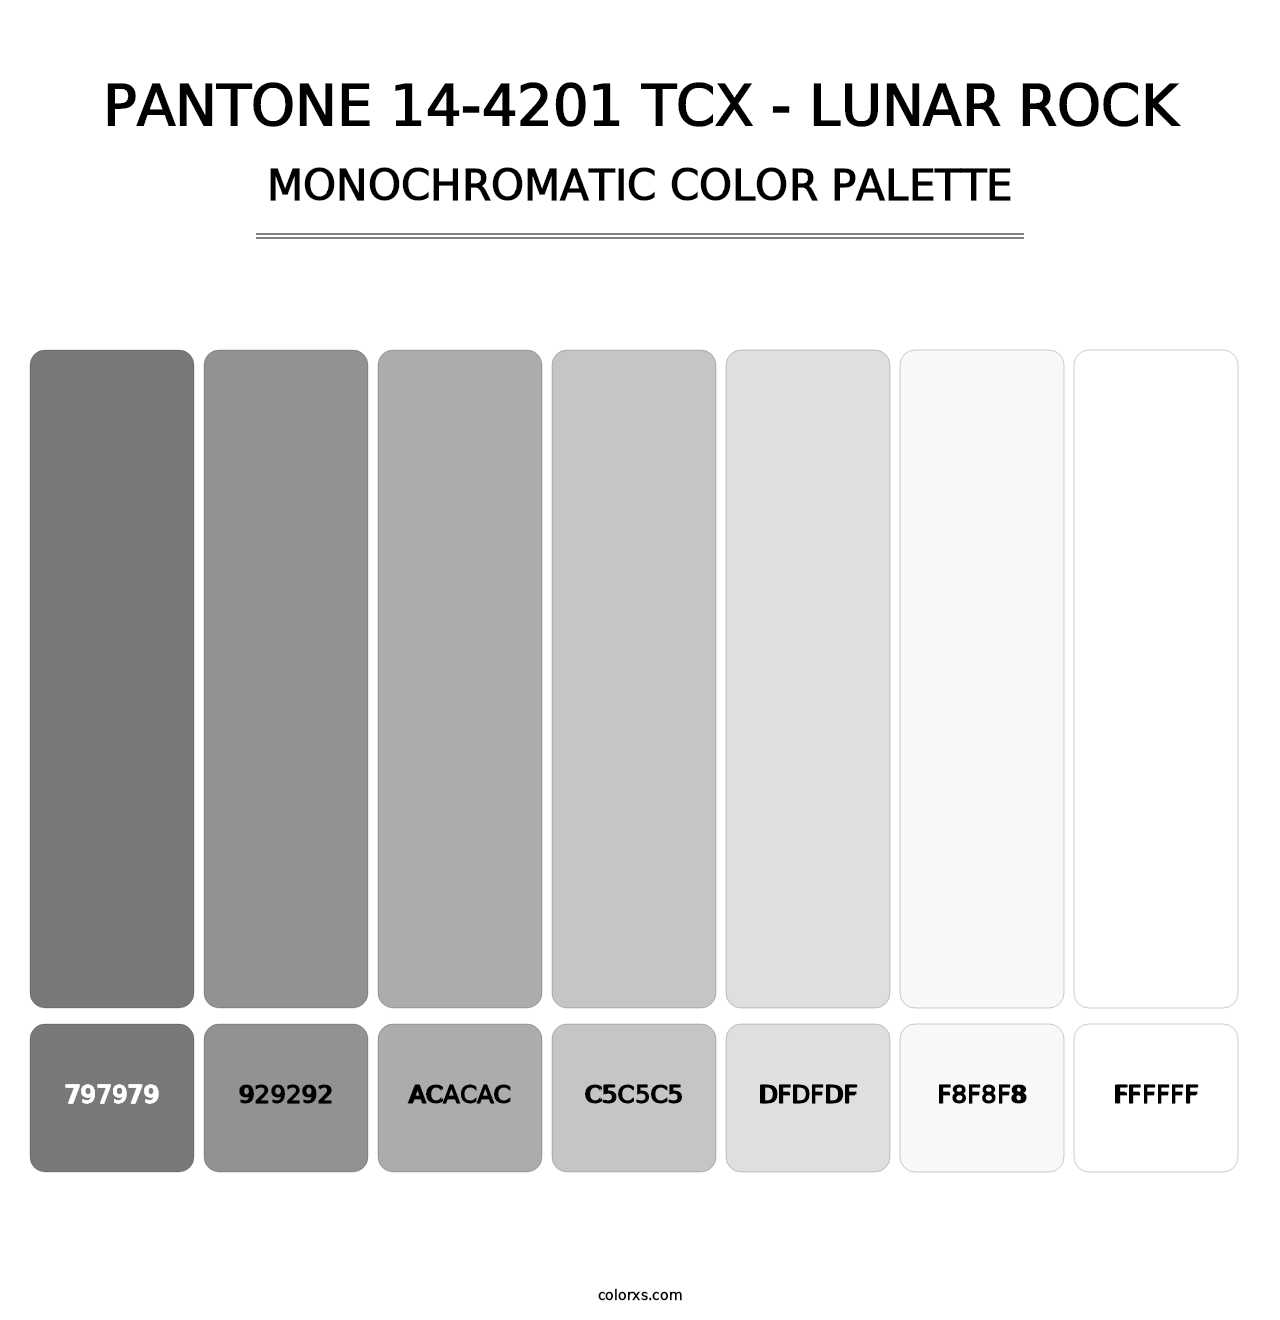 PANTONE 14-4201 TCX - Lunar Rock - Monochromatic Color Palette